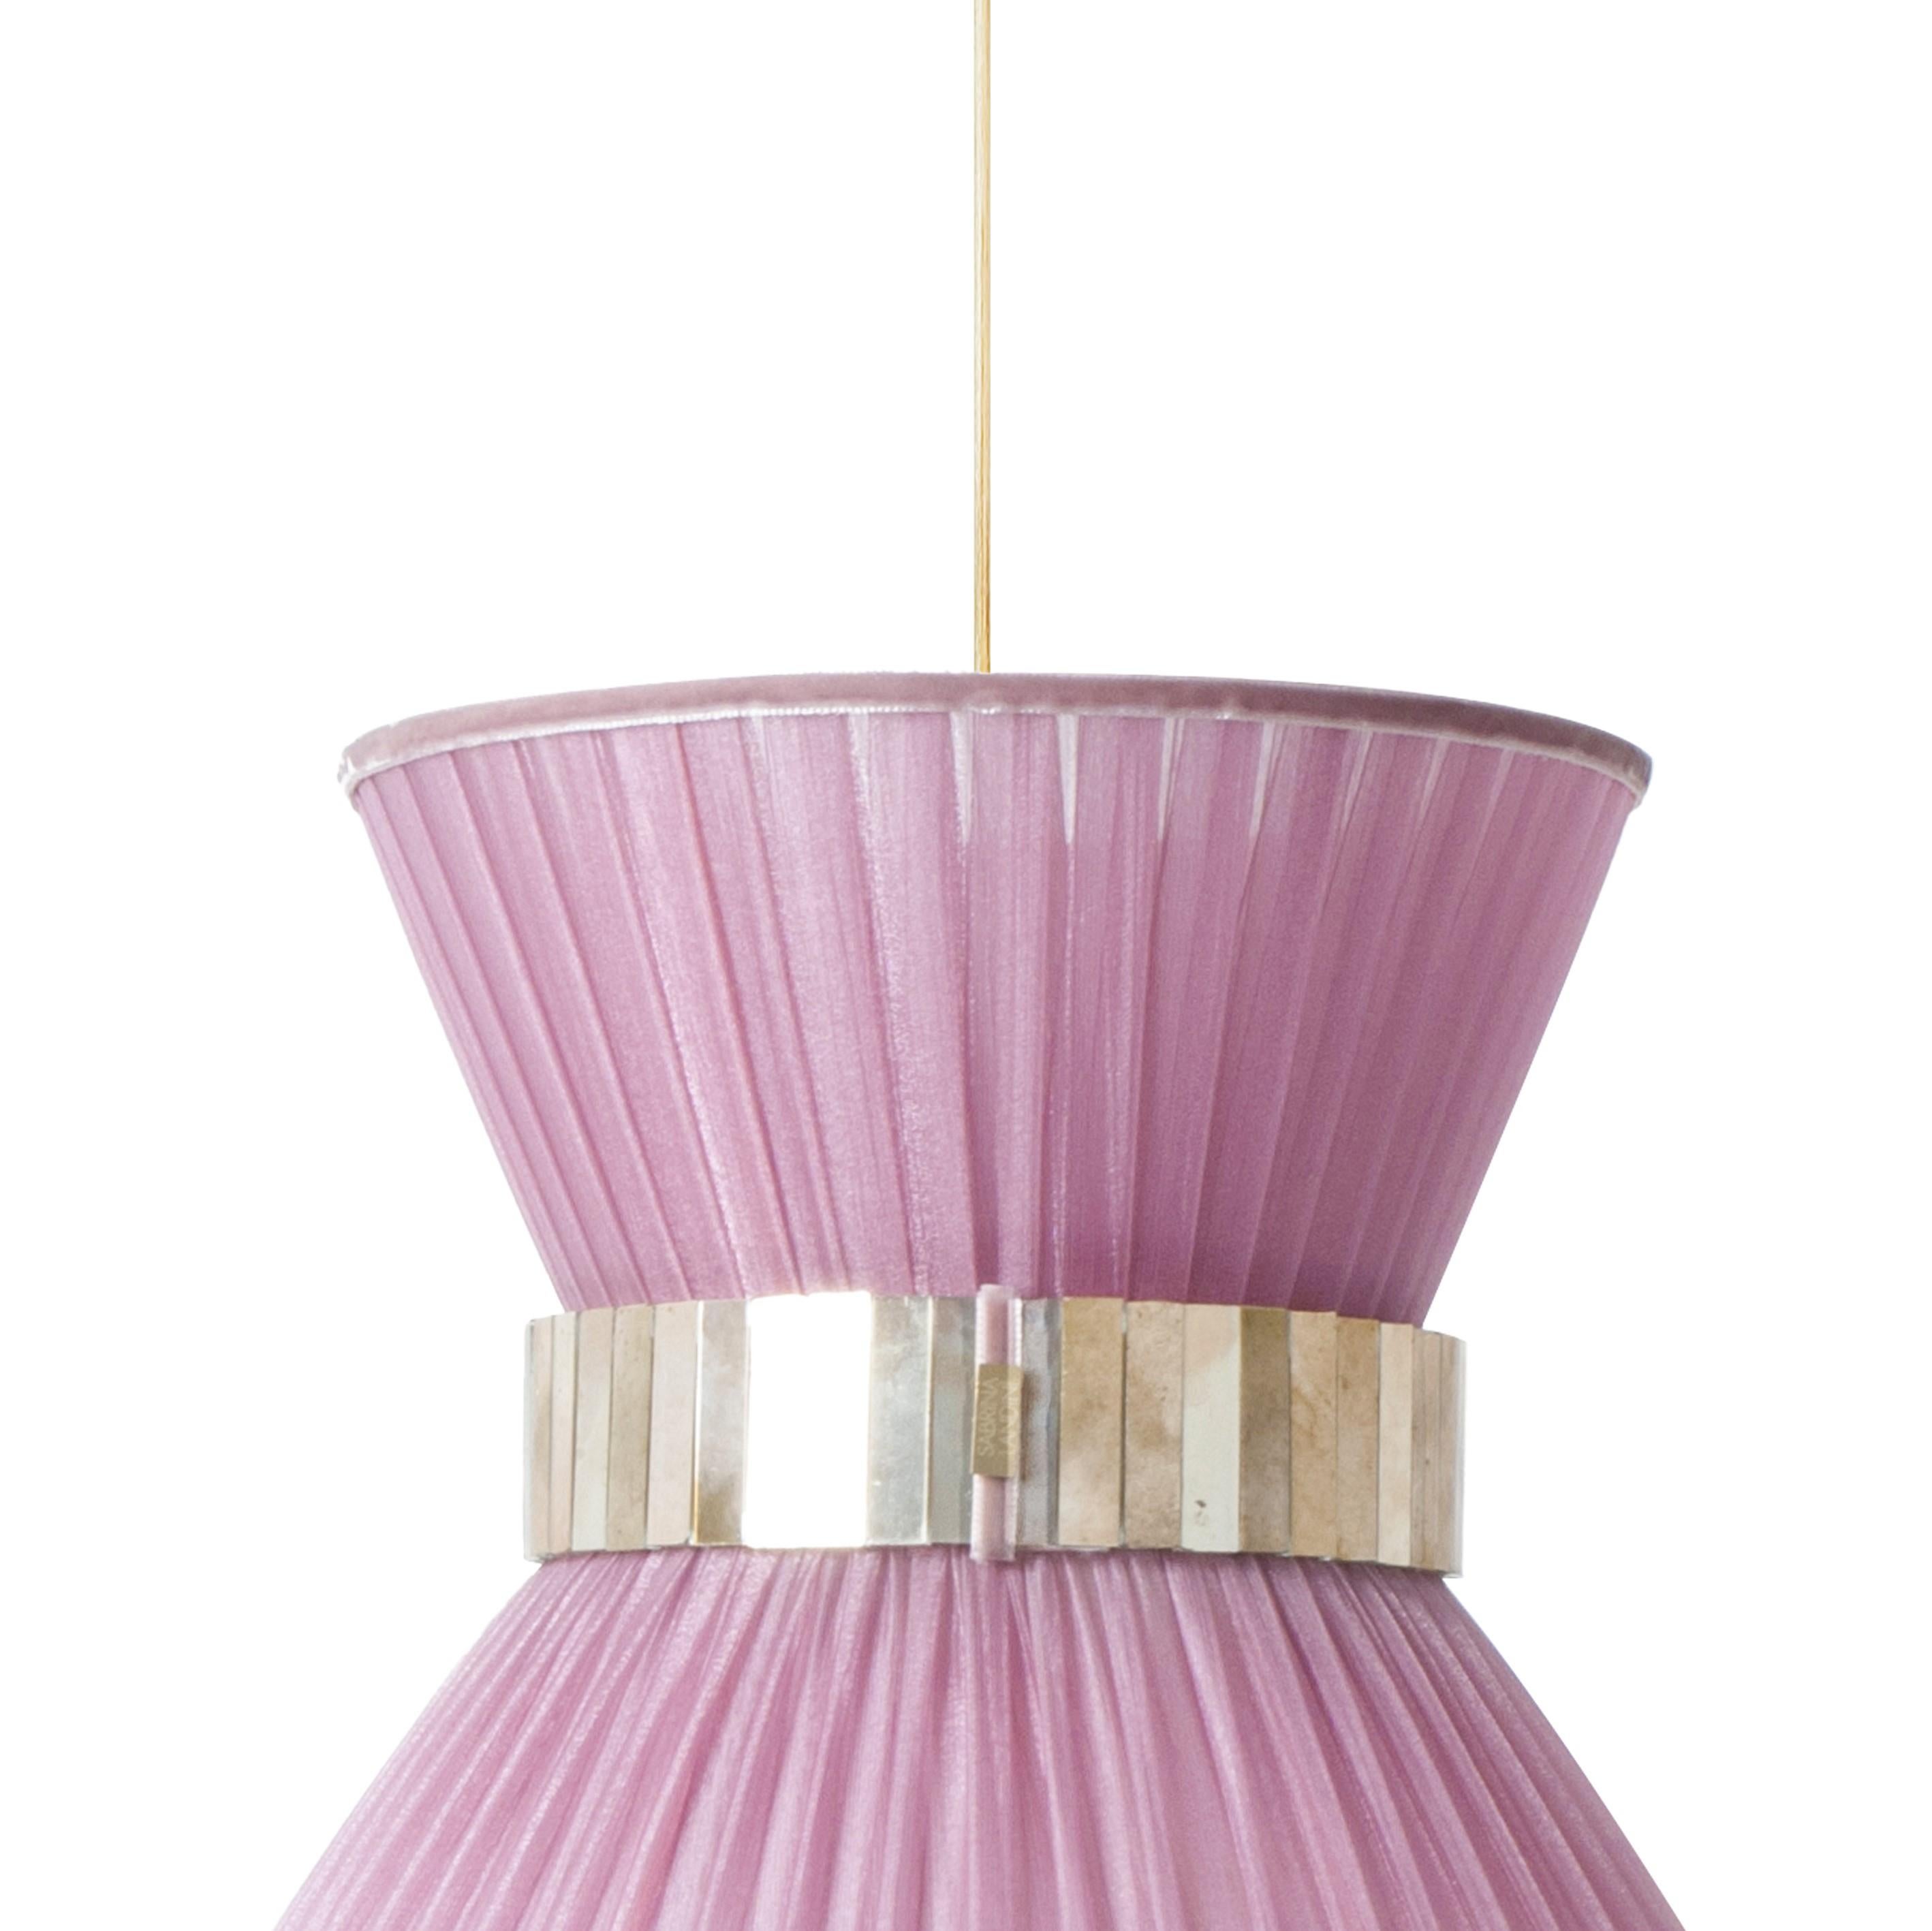 TIFFANY  die ikonische Lampe!
30cm Zwiebelseide
 

Seit 20 Jahren sind wir bestrebt, Ihnen einzigartige Collection'S in Bezug auf Design und Qualität anzubieten. Alle unsere kultigen Produkte werden in unserem Atelier in der Toskana, Italien, nach